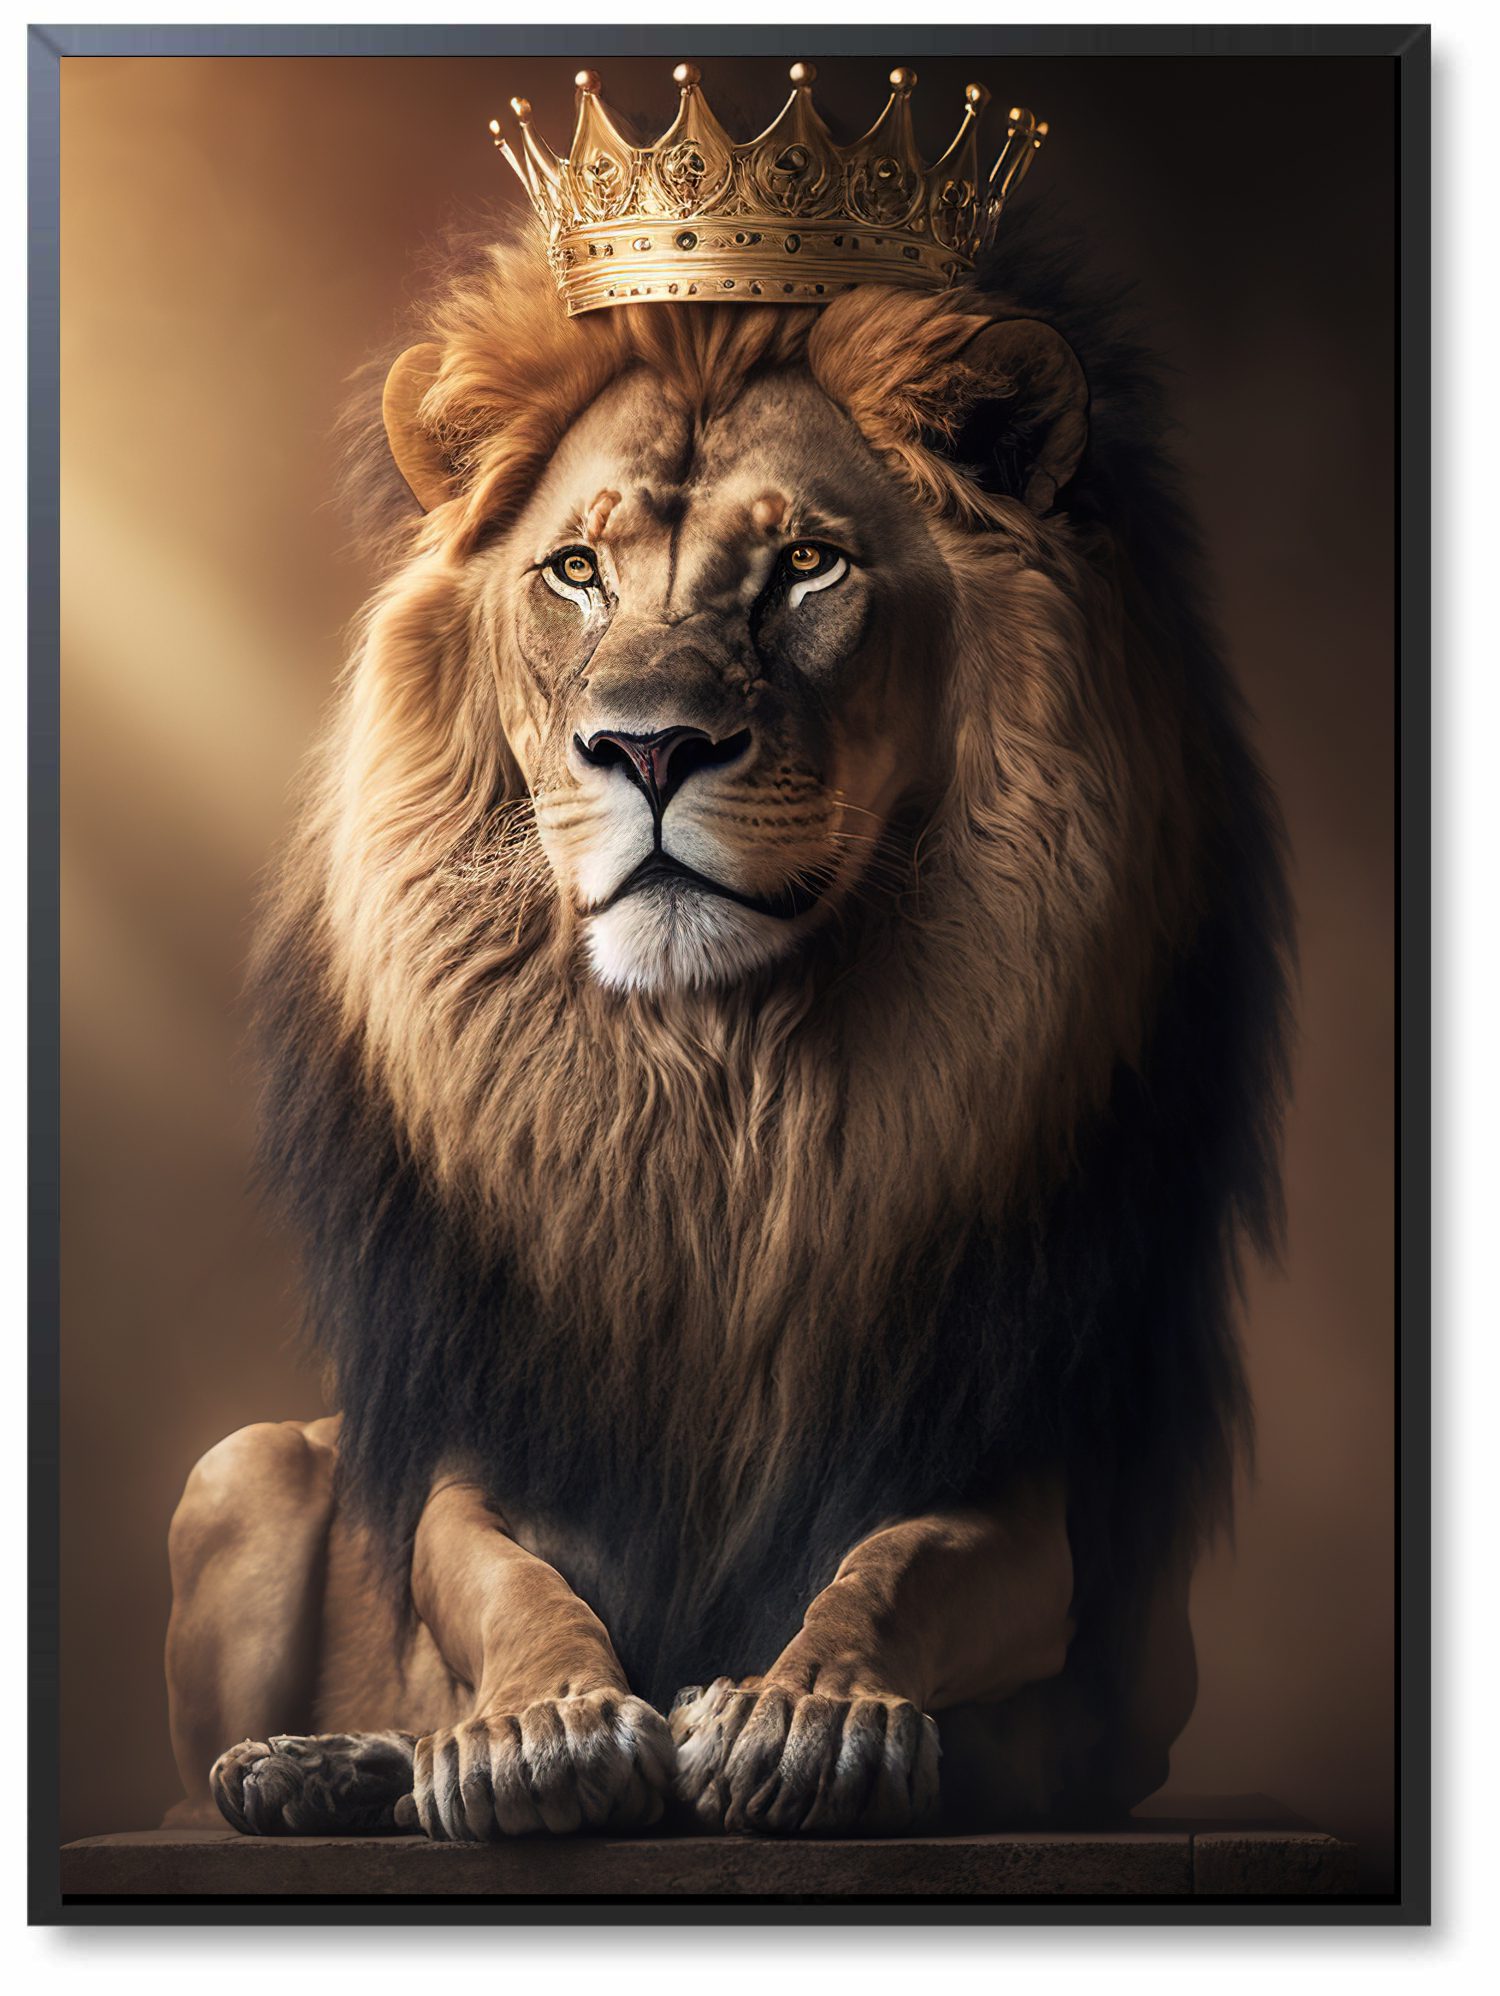 Quadro Decorativo Jesus Rei e o Leão